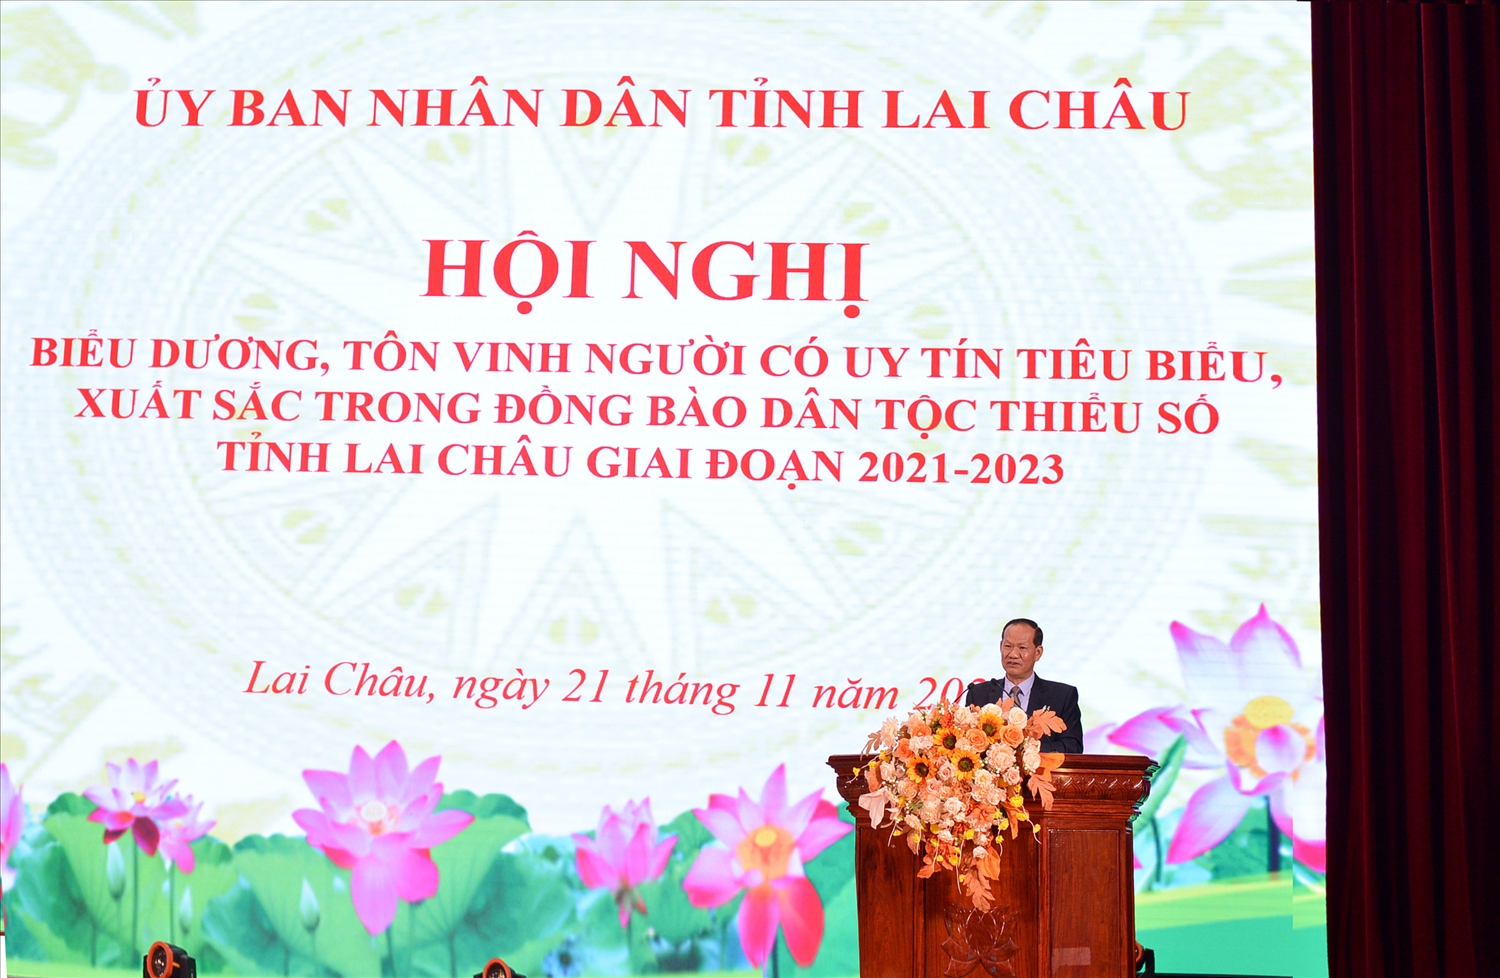 Đồng chí Trần Hữu Chí, Trưởng Ban Dân tộc tỉnh Lai Châu báo cáo đánh giá kết quả hoạt động phát huy vai trò của Người có uy tín trong đồng bào DTTS tỉnh Lai Châu giai đoạn 2021 - 2023.